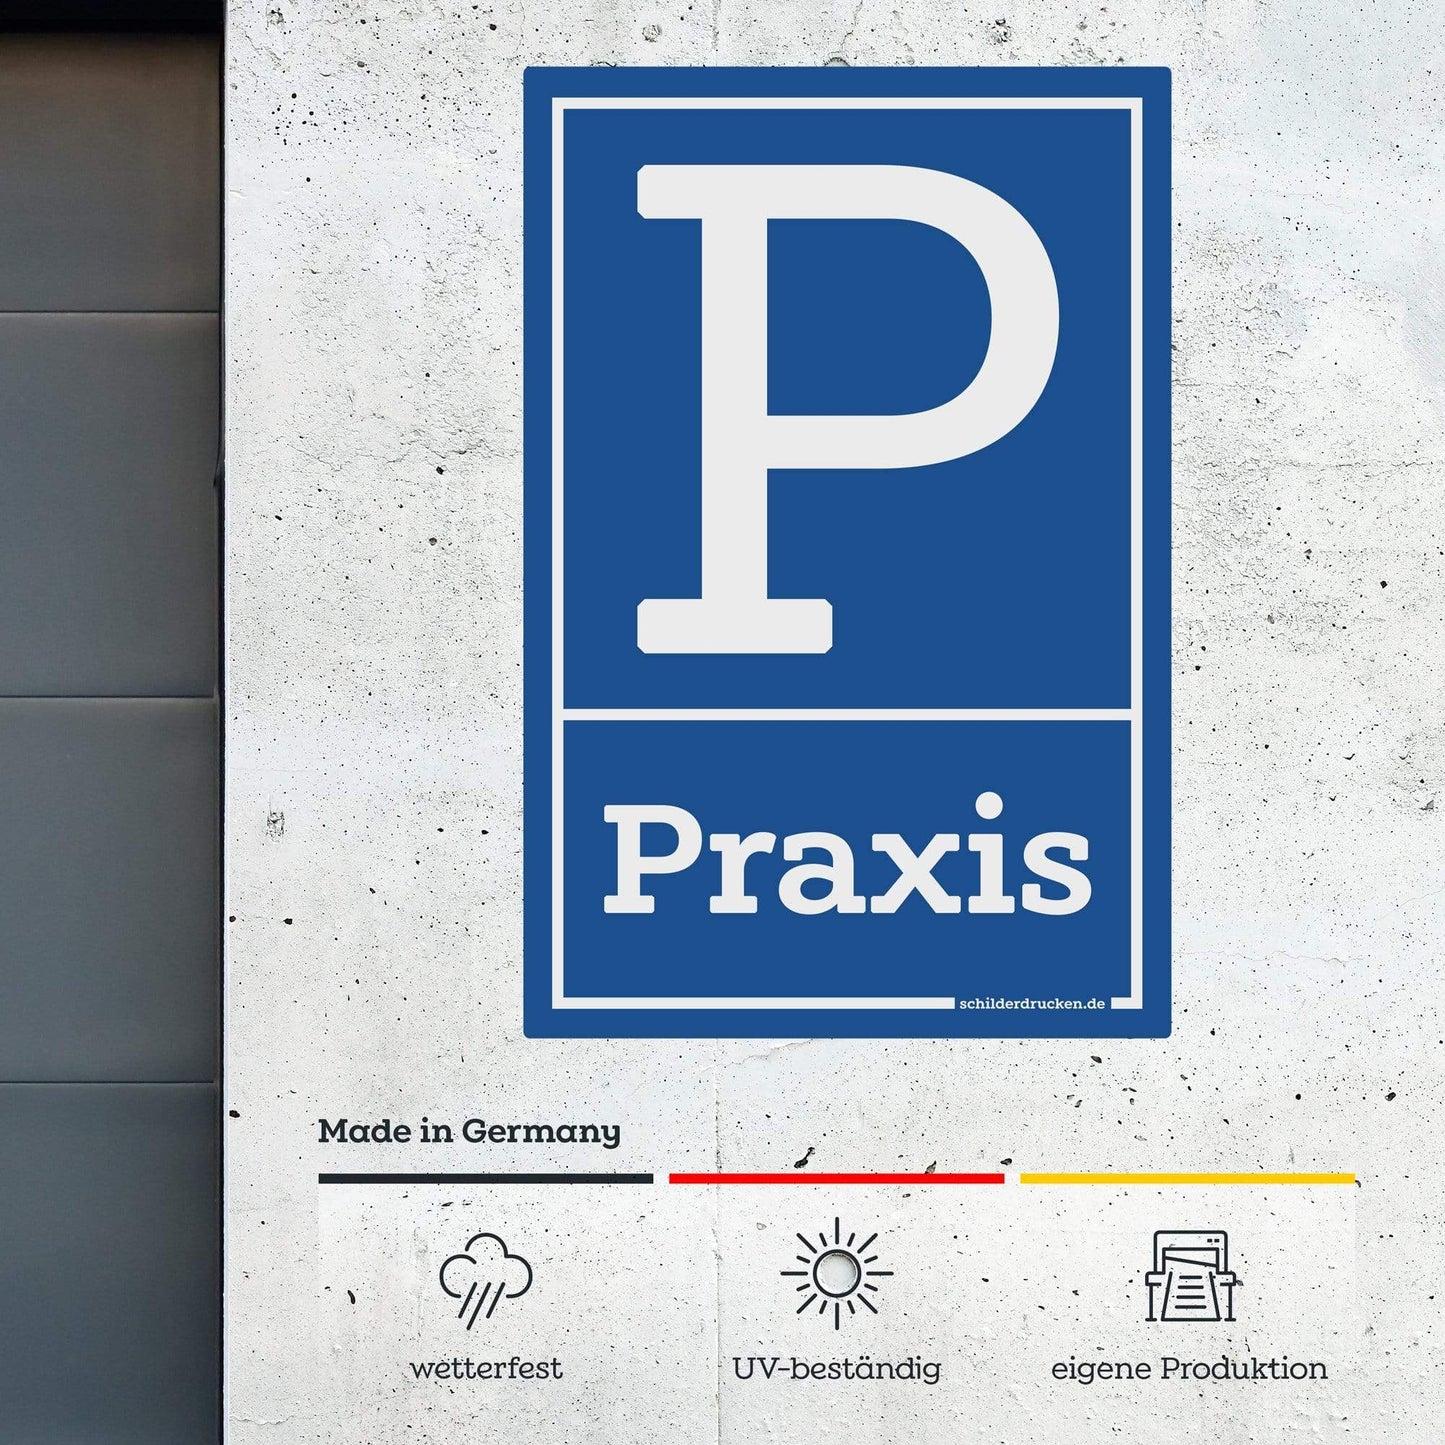 Praxis Parkplatz 10 x 15 cm / weiss / Alu-Dibond online drucken lassen bei schilderdrucken.de